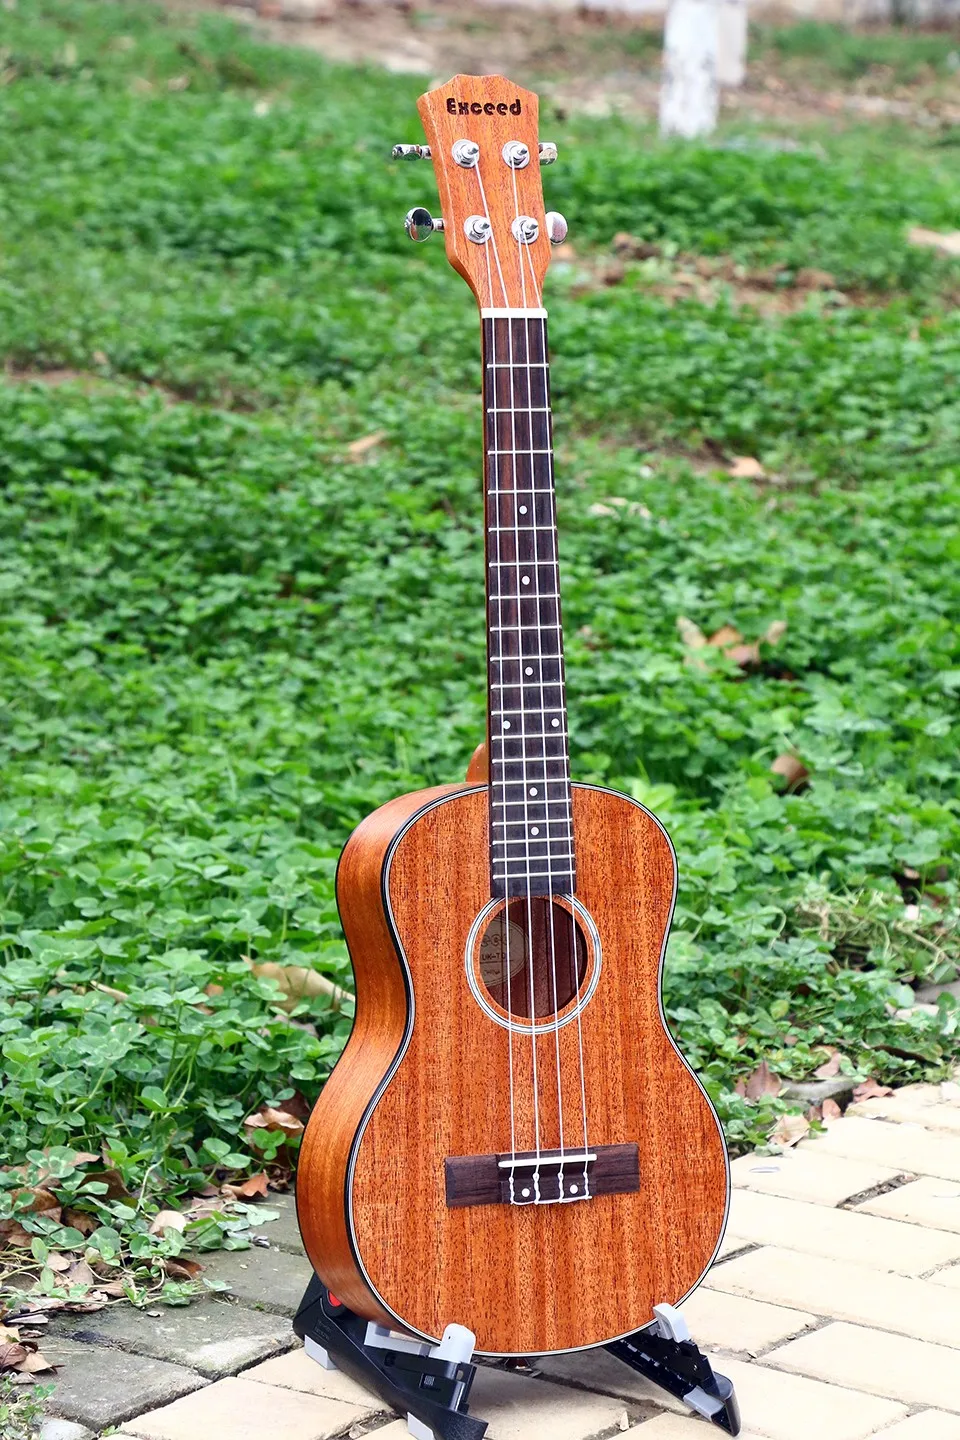 26 inchTenor Гавайская Гитара ручной работы из красного дерева samll струнные Гавайи guitarra ukelele уке музыкальный инструмент+ мешок